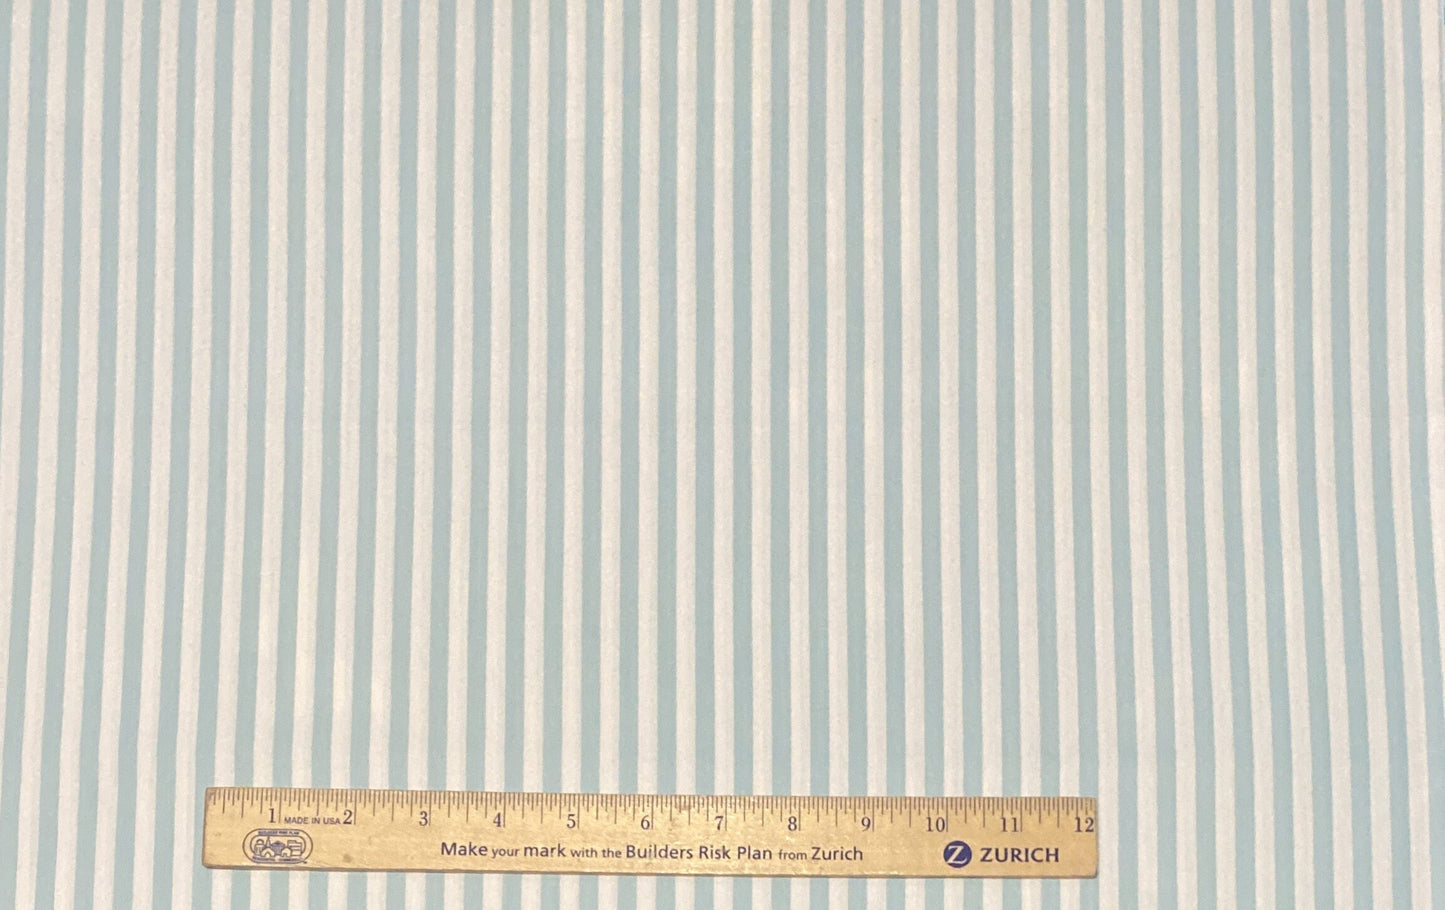 EOB - Soft White Fabric / Light Aqua Vertical (Parallel to Selvage) Stripe Fabric - Selvage to Selvage Print